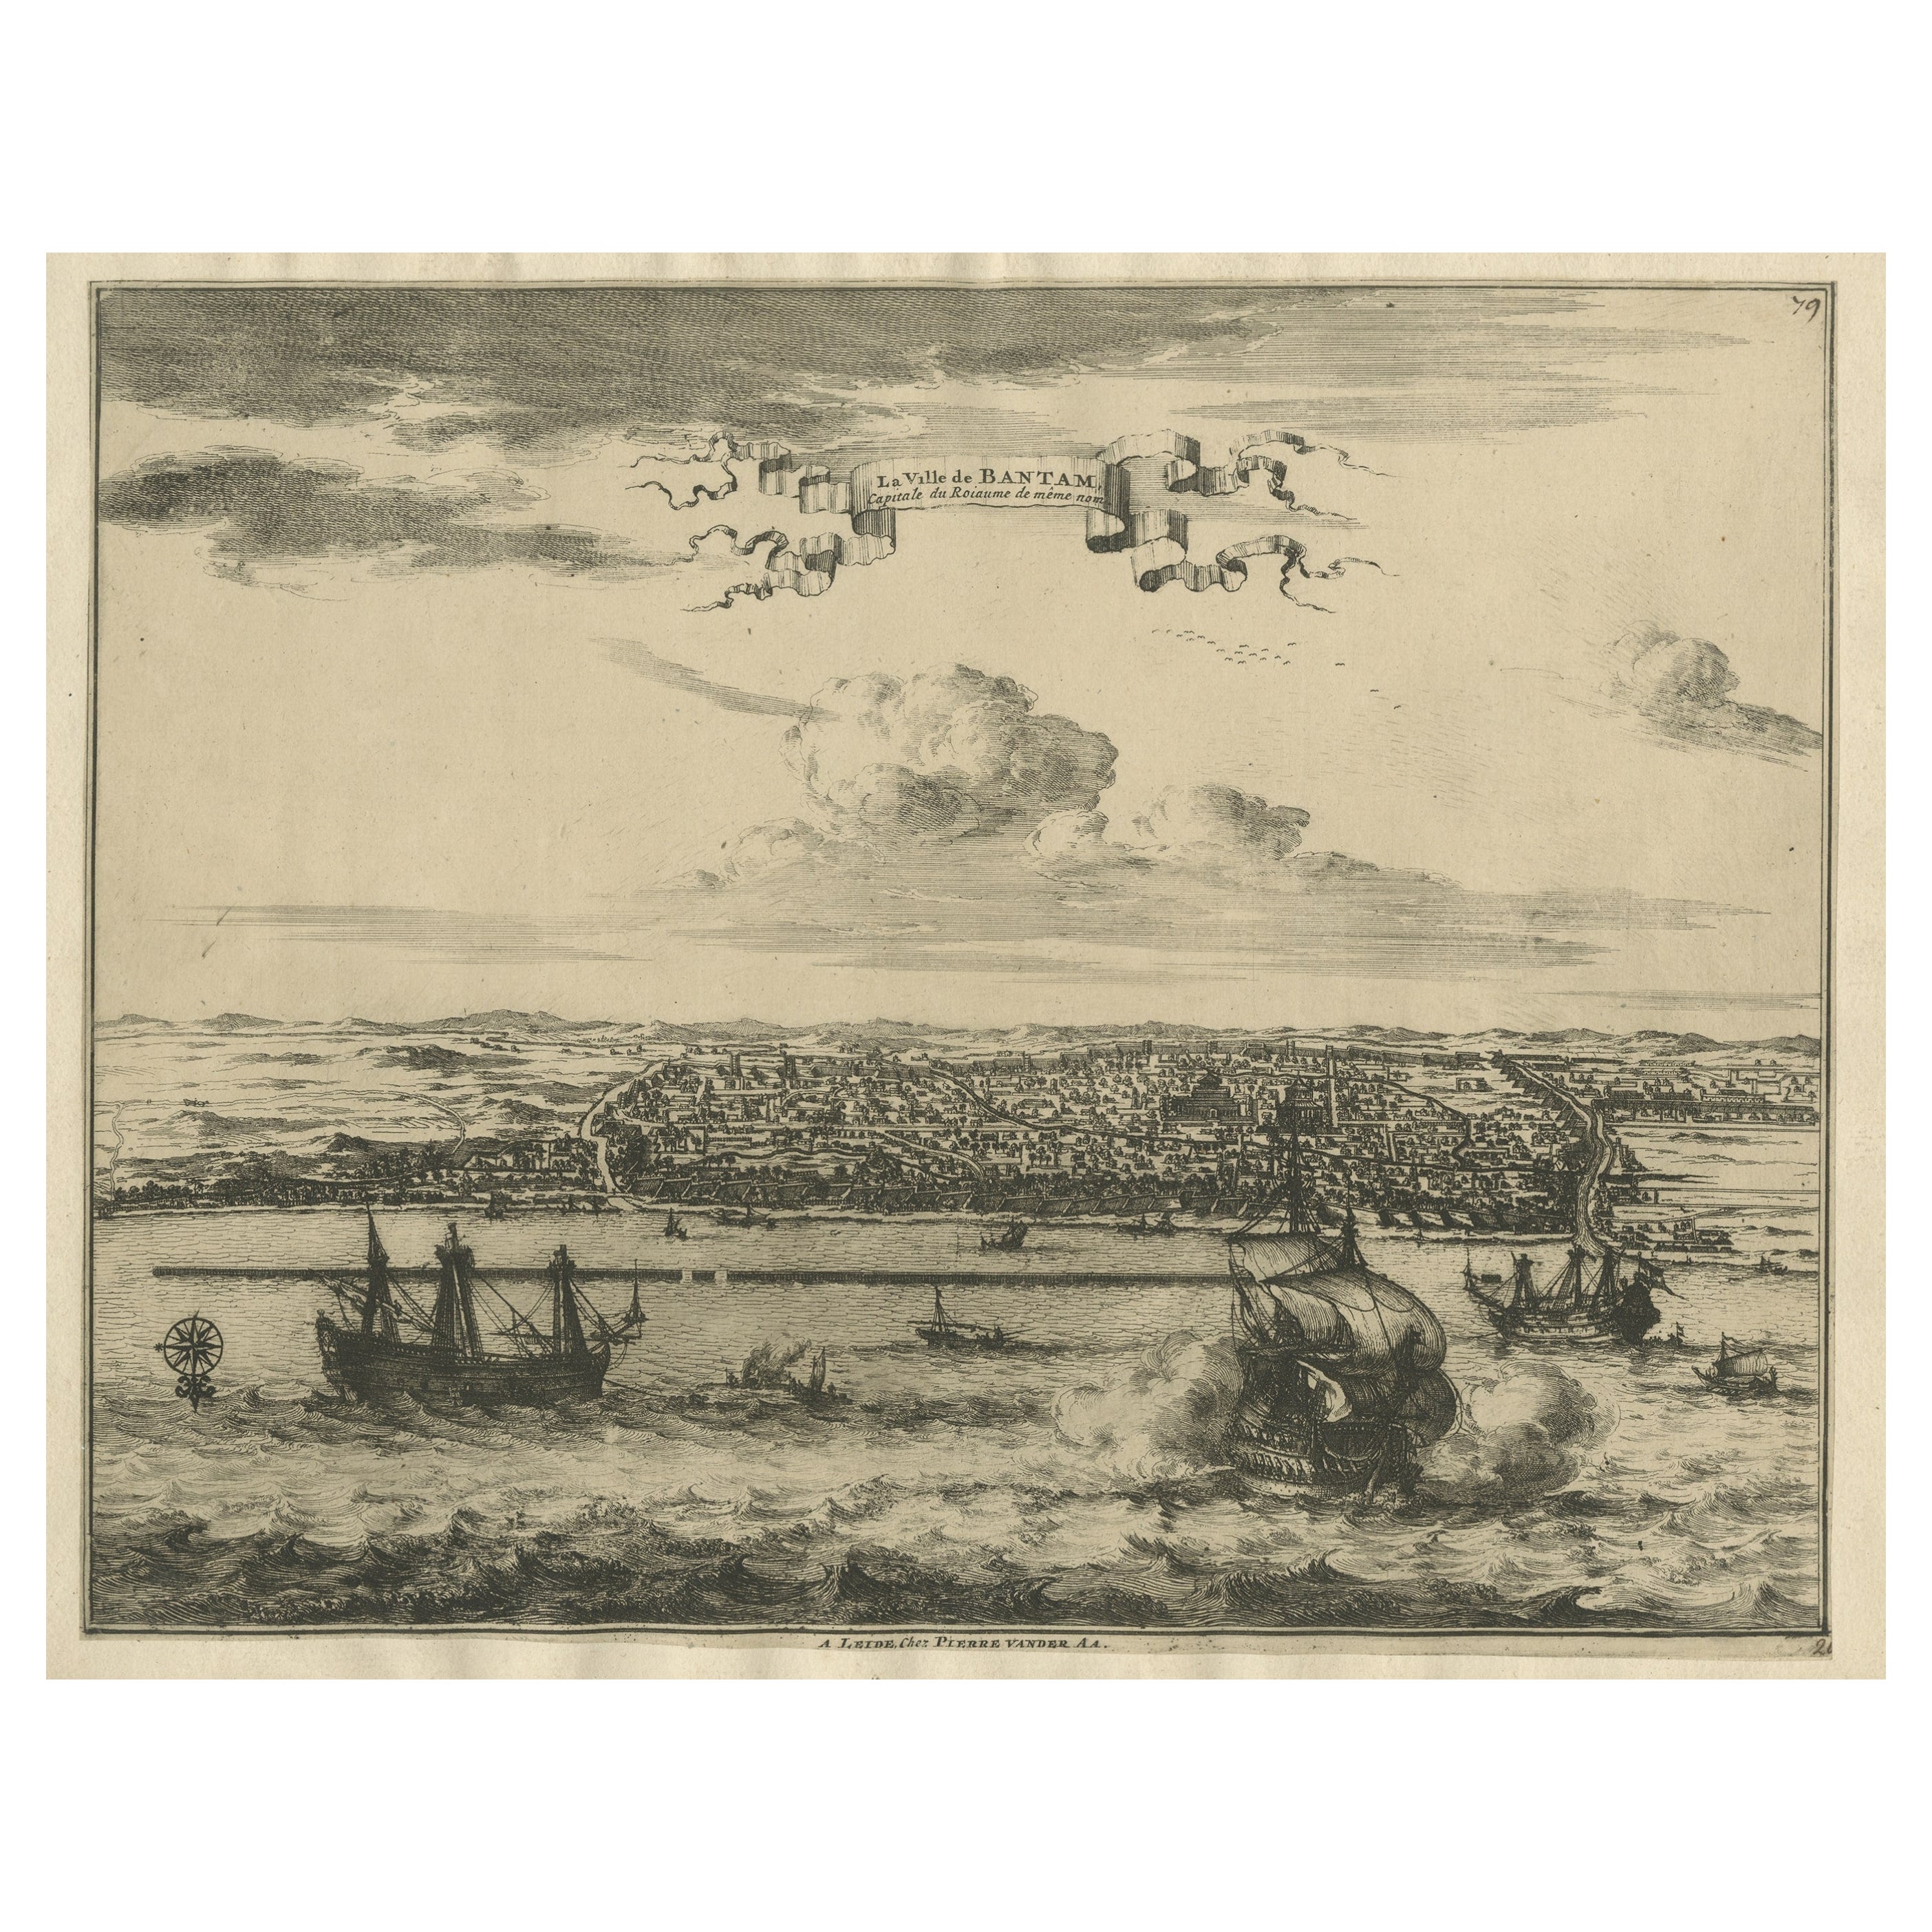 View of the City Banten ou Bantam près de l'extrémité occidentale de Java, Indonésie, vers 1725